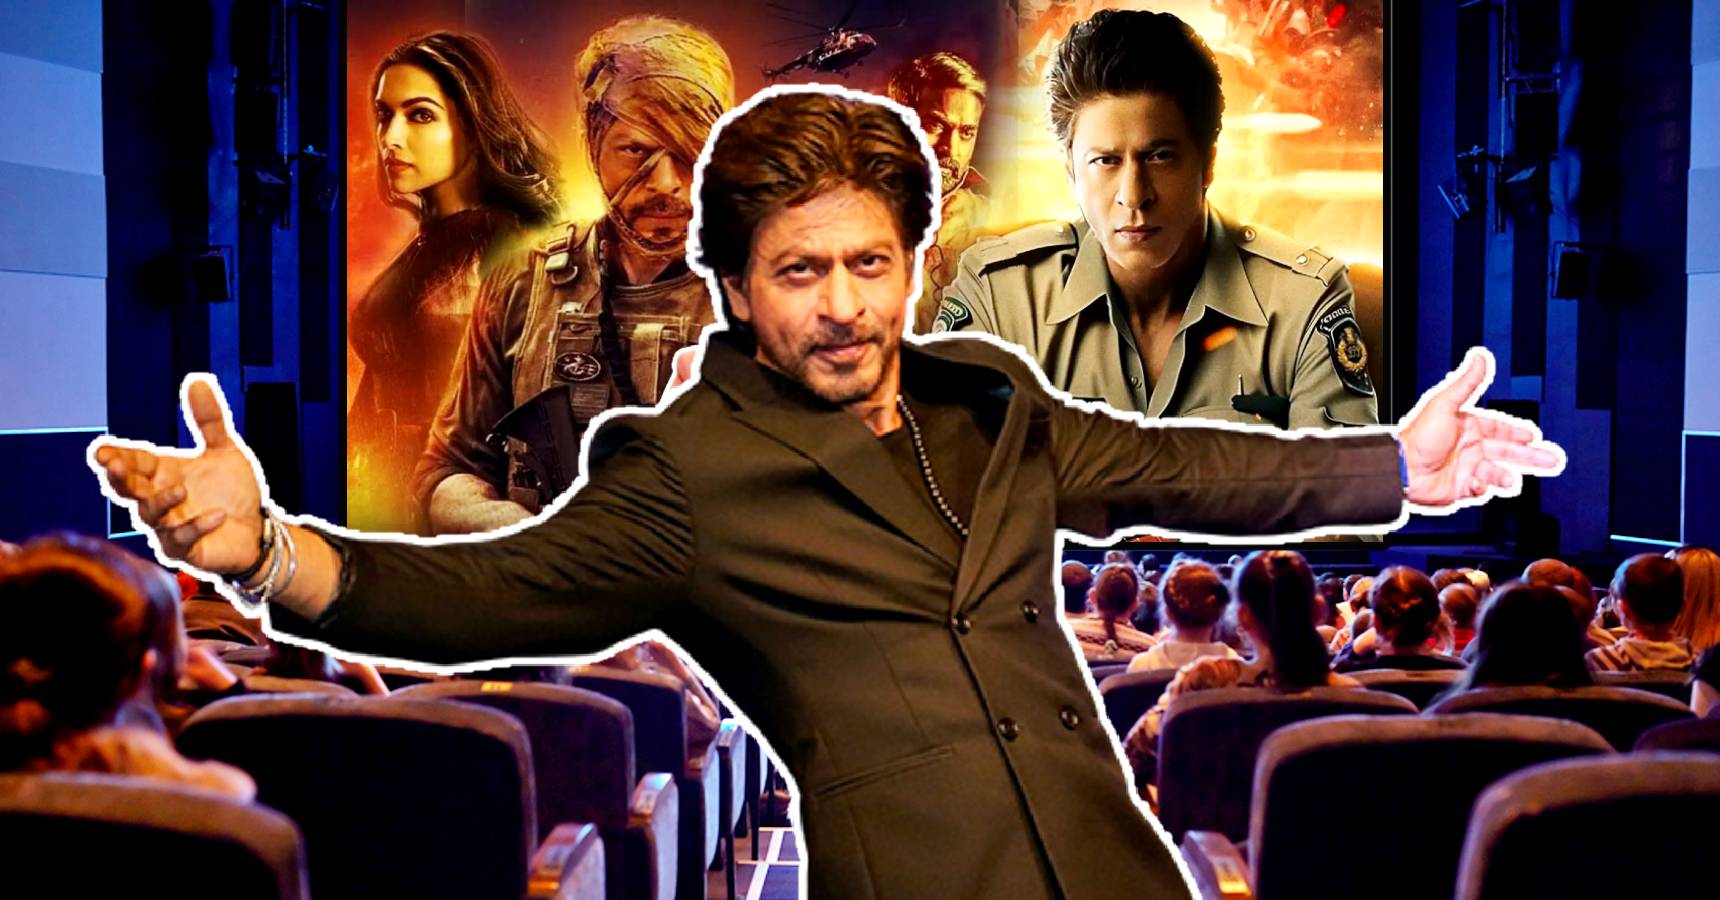 Kolkata will have first show of Shah Rukh Khan’s Jawan at 5 am